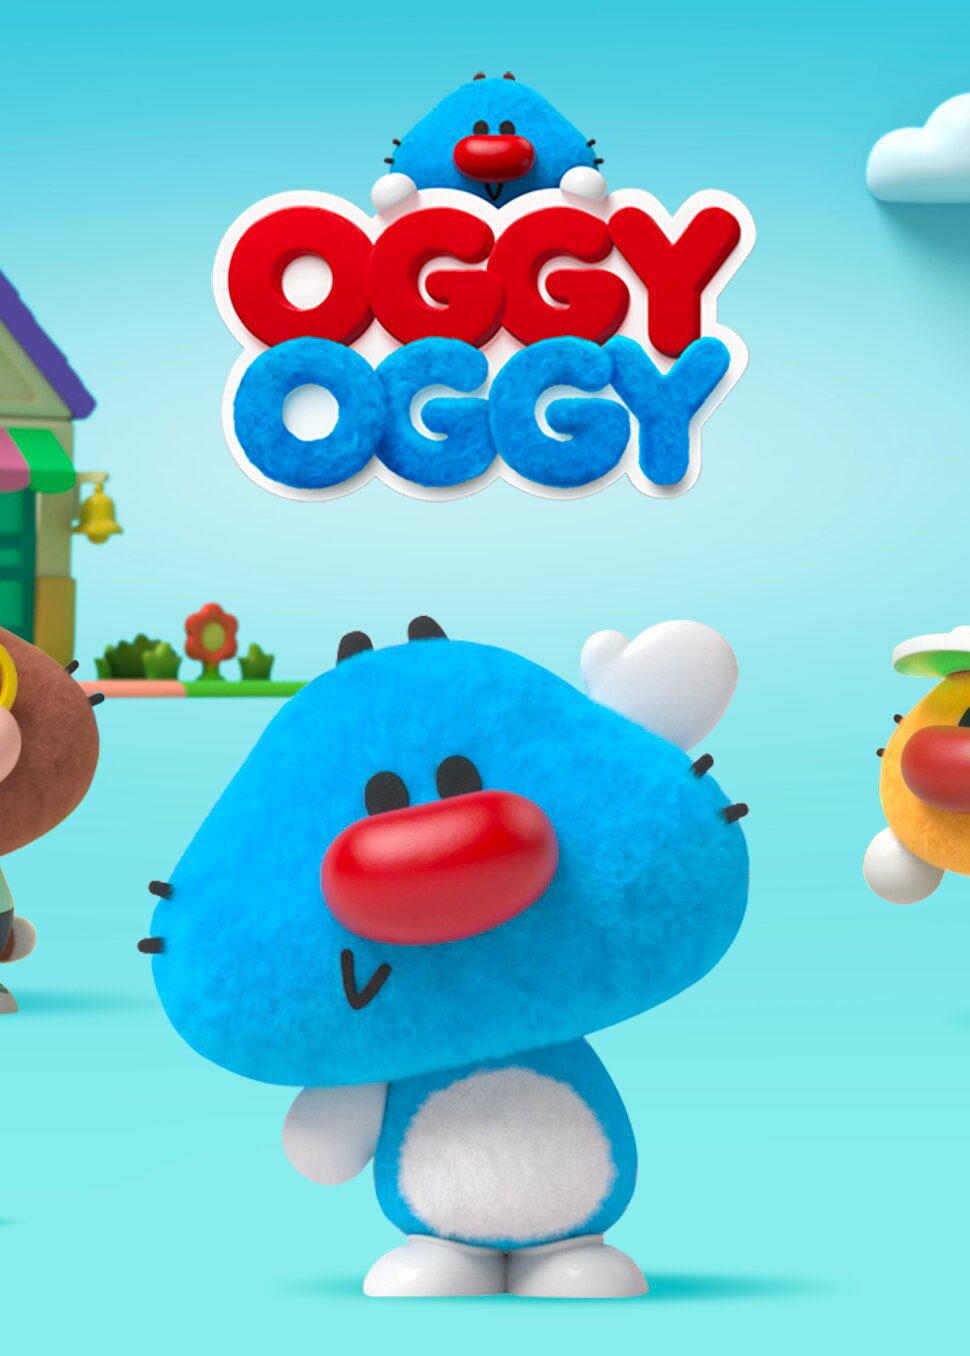 Oggy Oggy teaser image